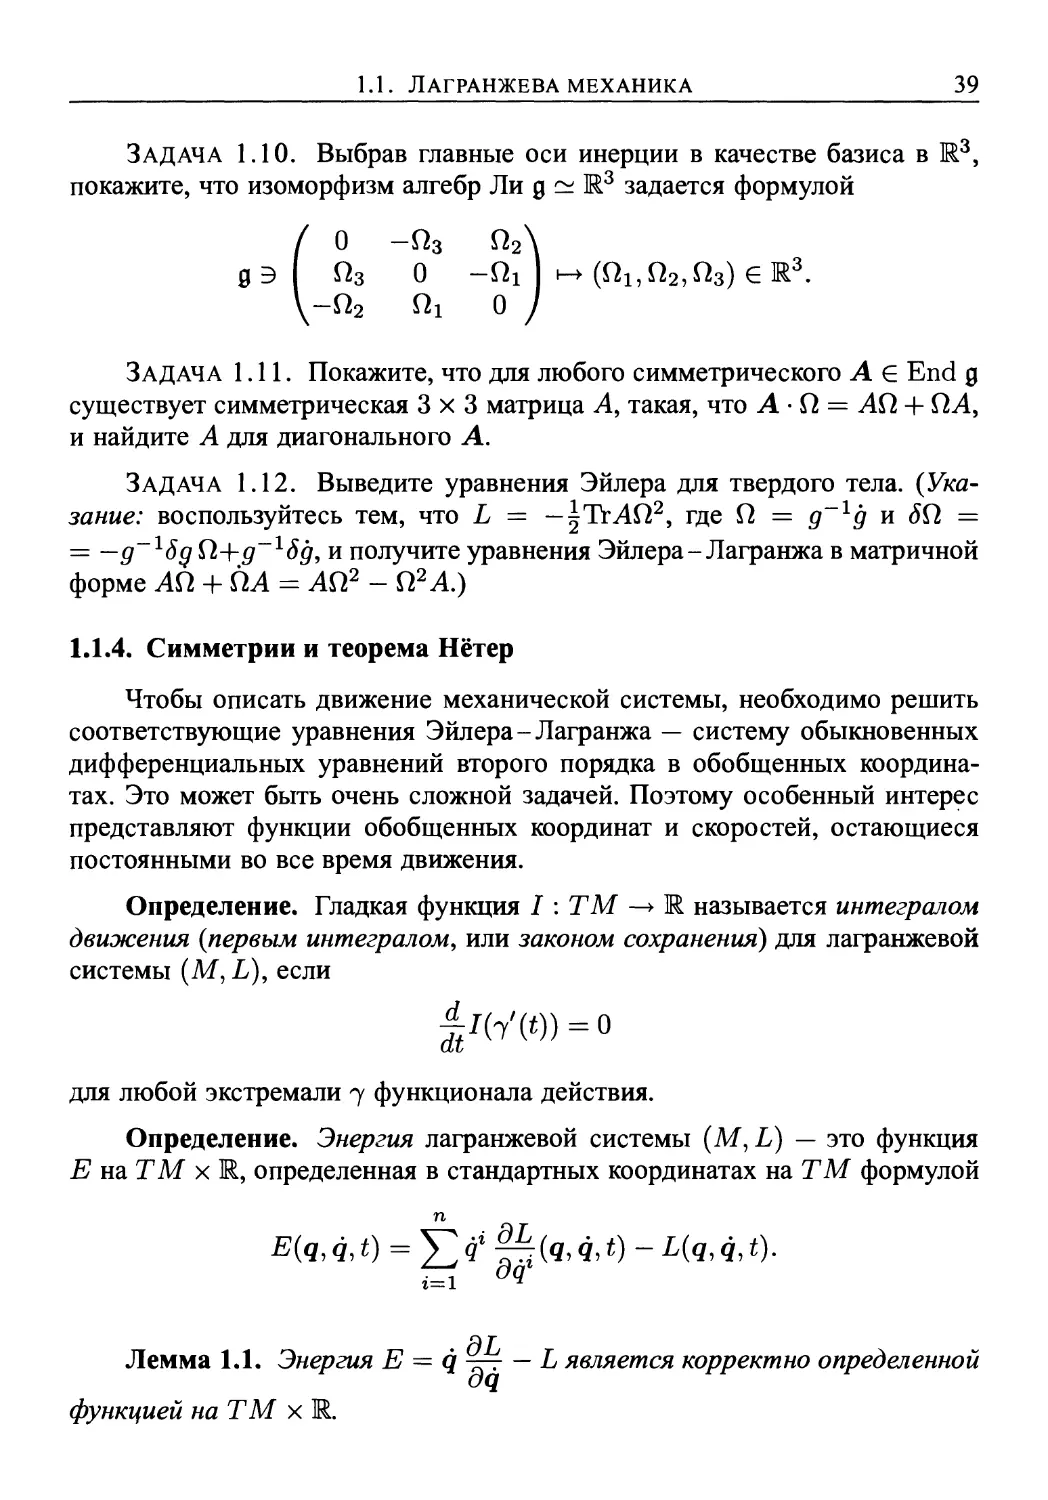 1.1.4. Симметрии и теорема Нётер